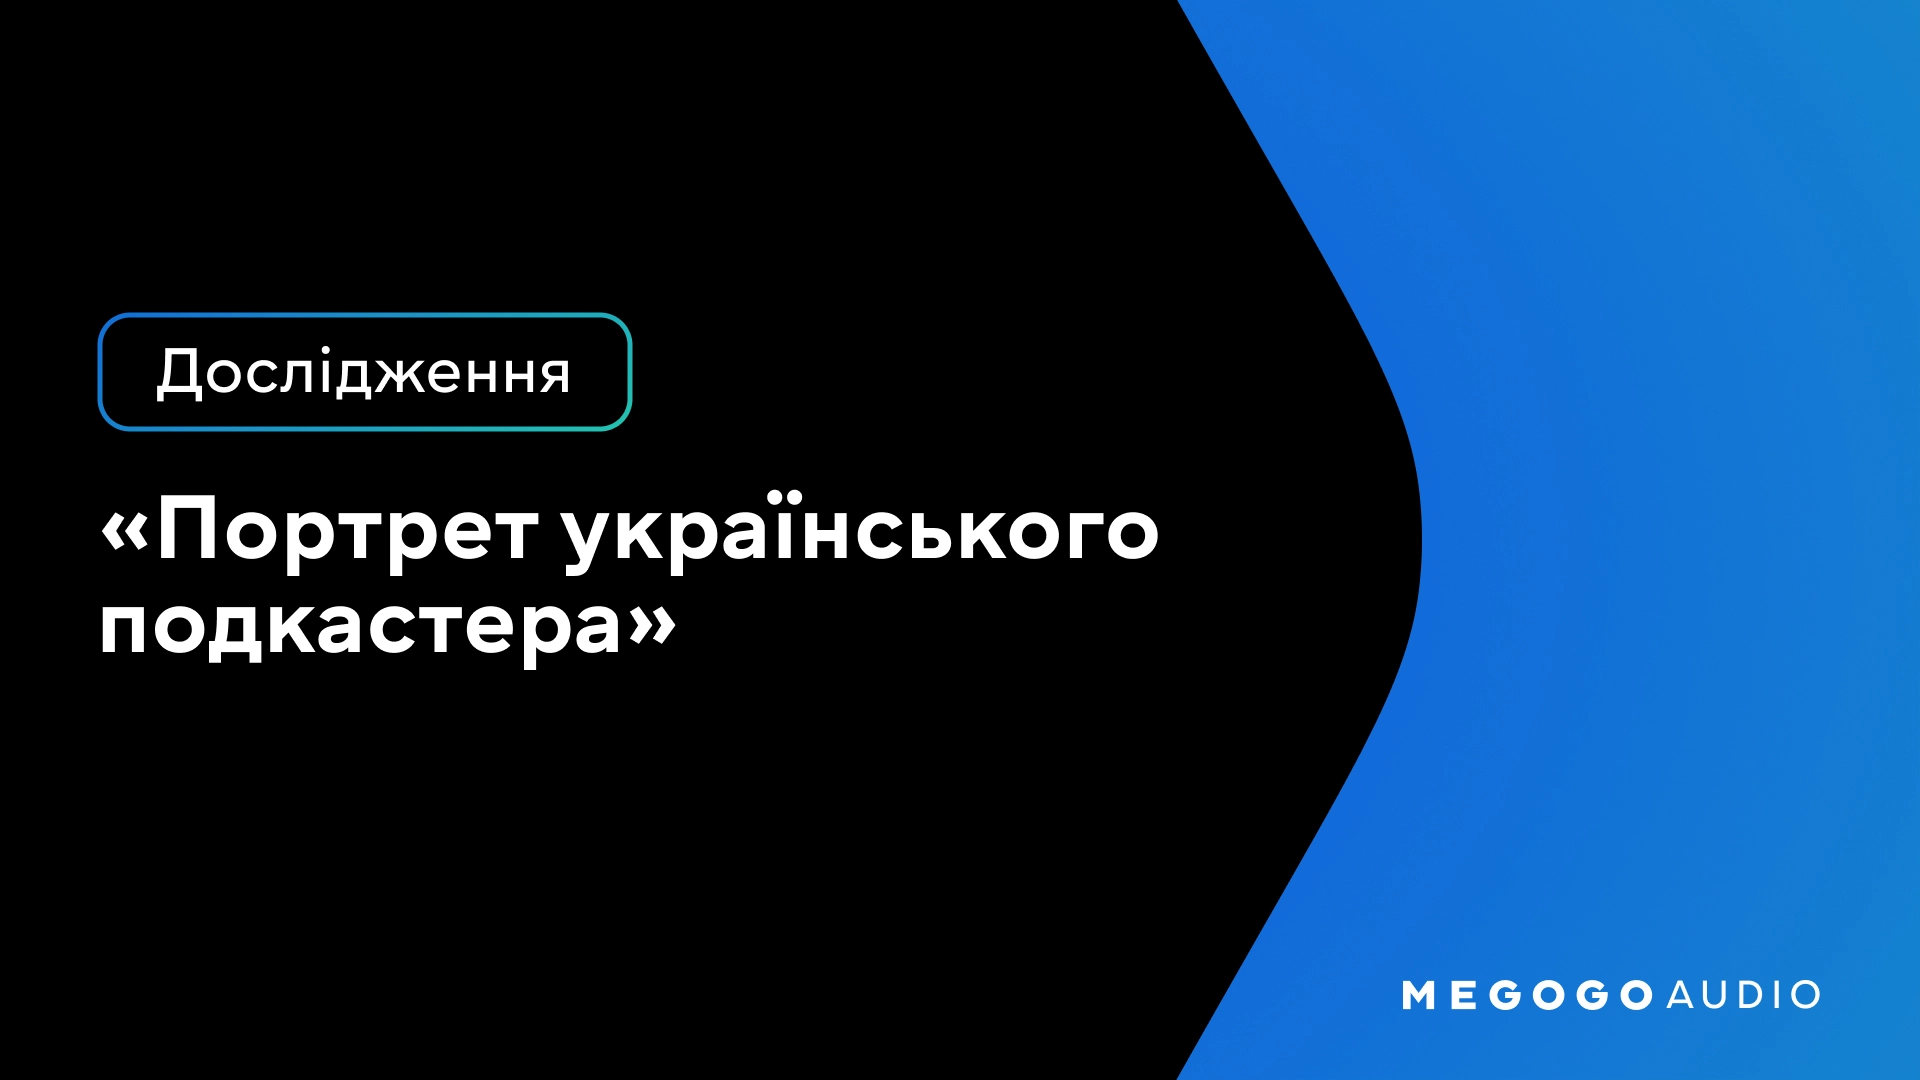 Megogo Audio представило дослідження ринку українських подкастерів